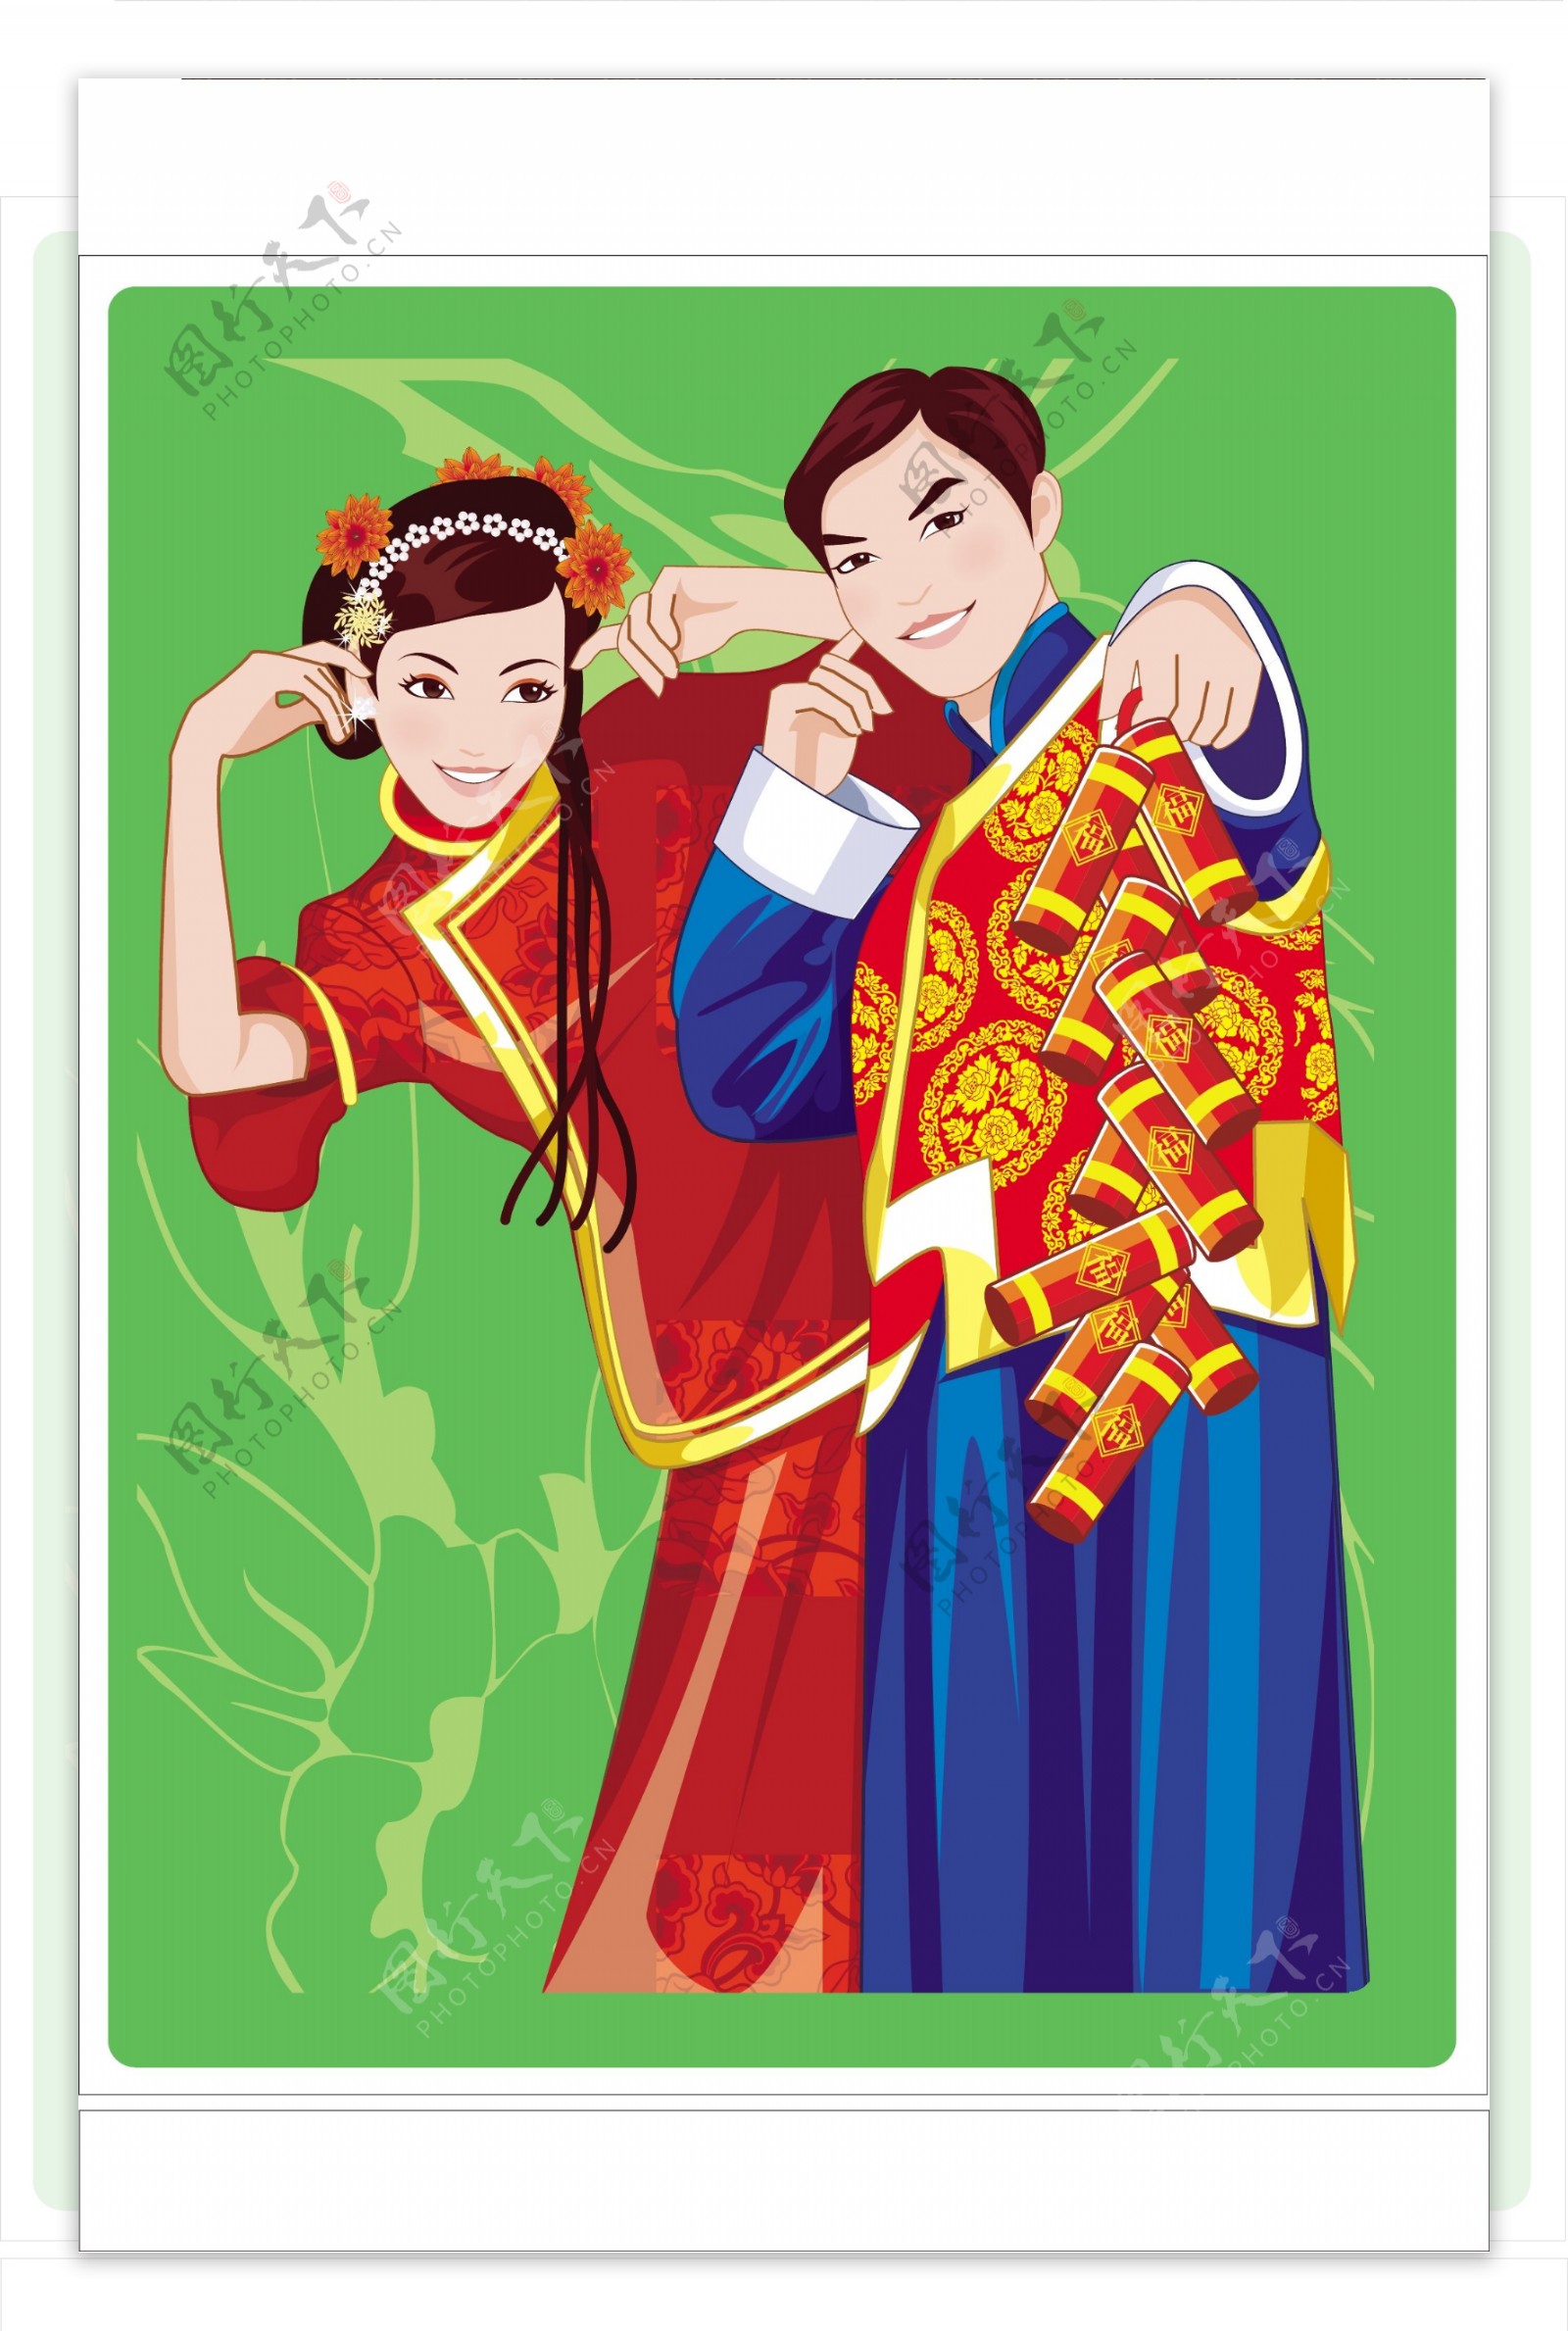 09中国传统婚礼全套sxzj